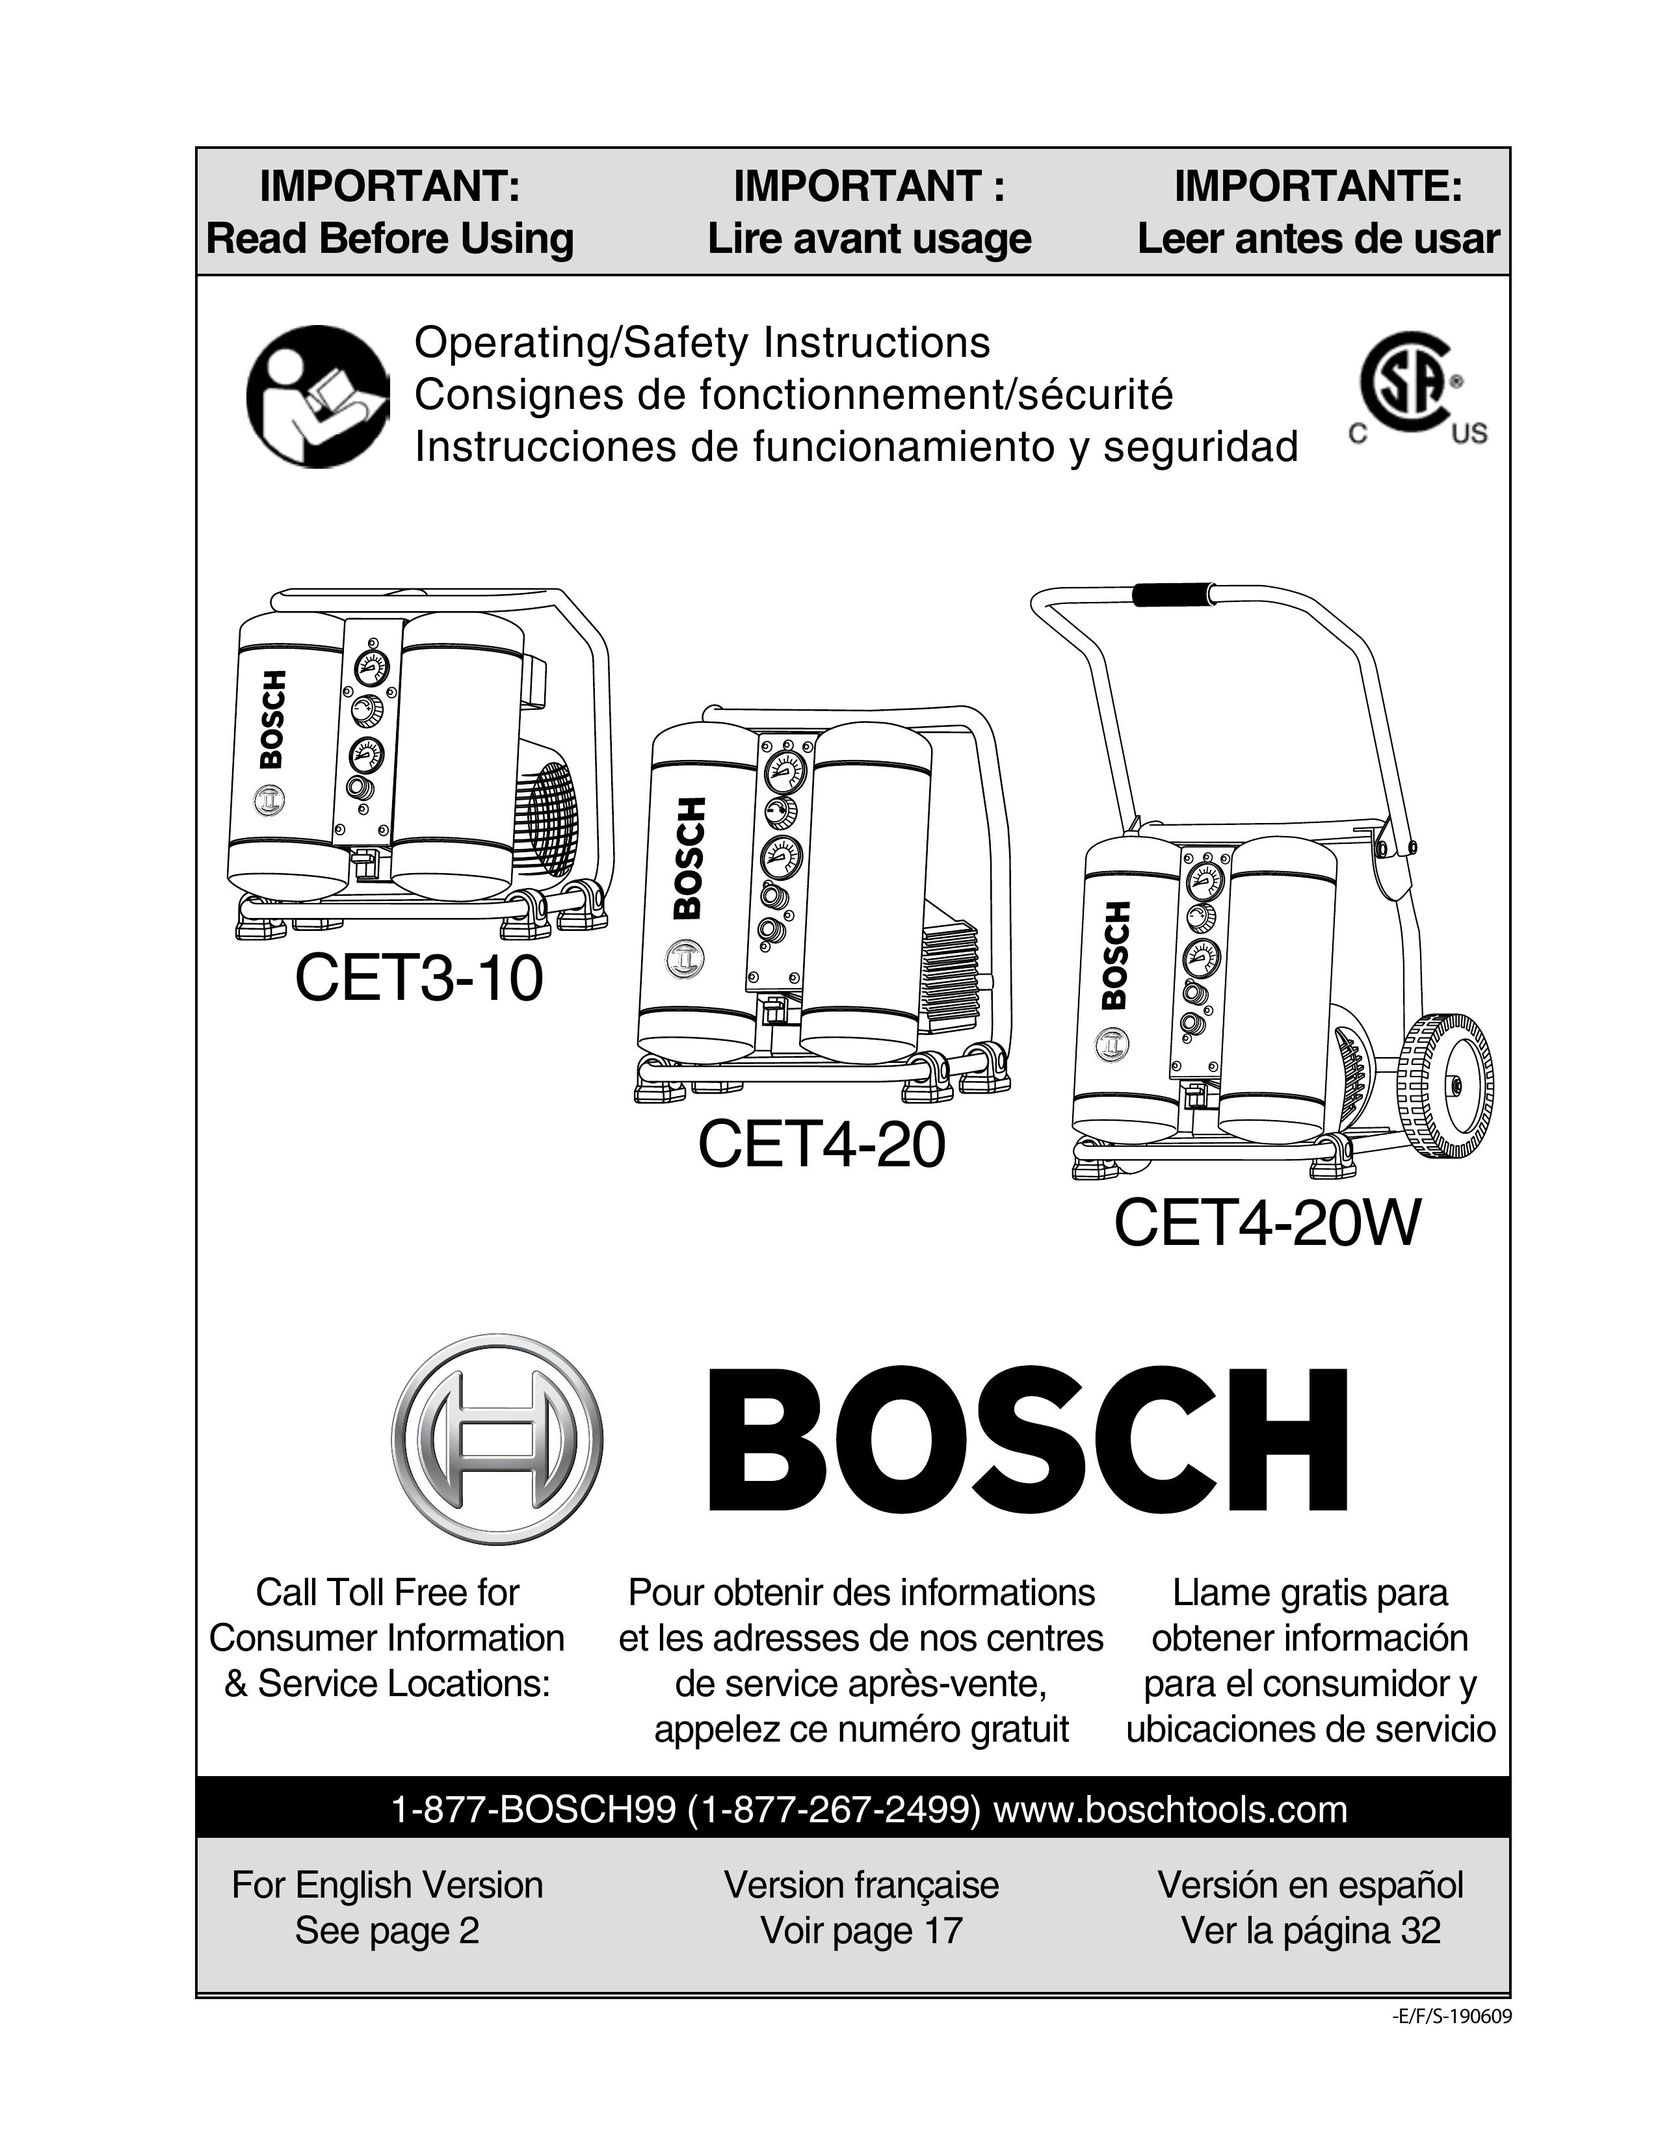 Bosch Power Tools CET4-20W Air Compressor User Manual